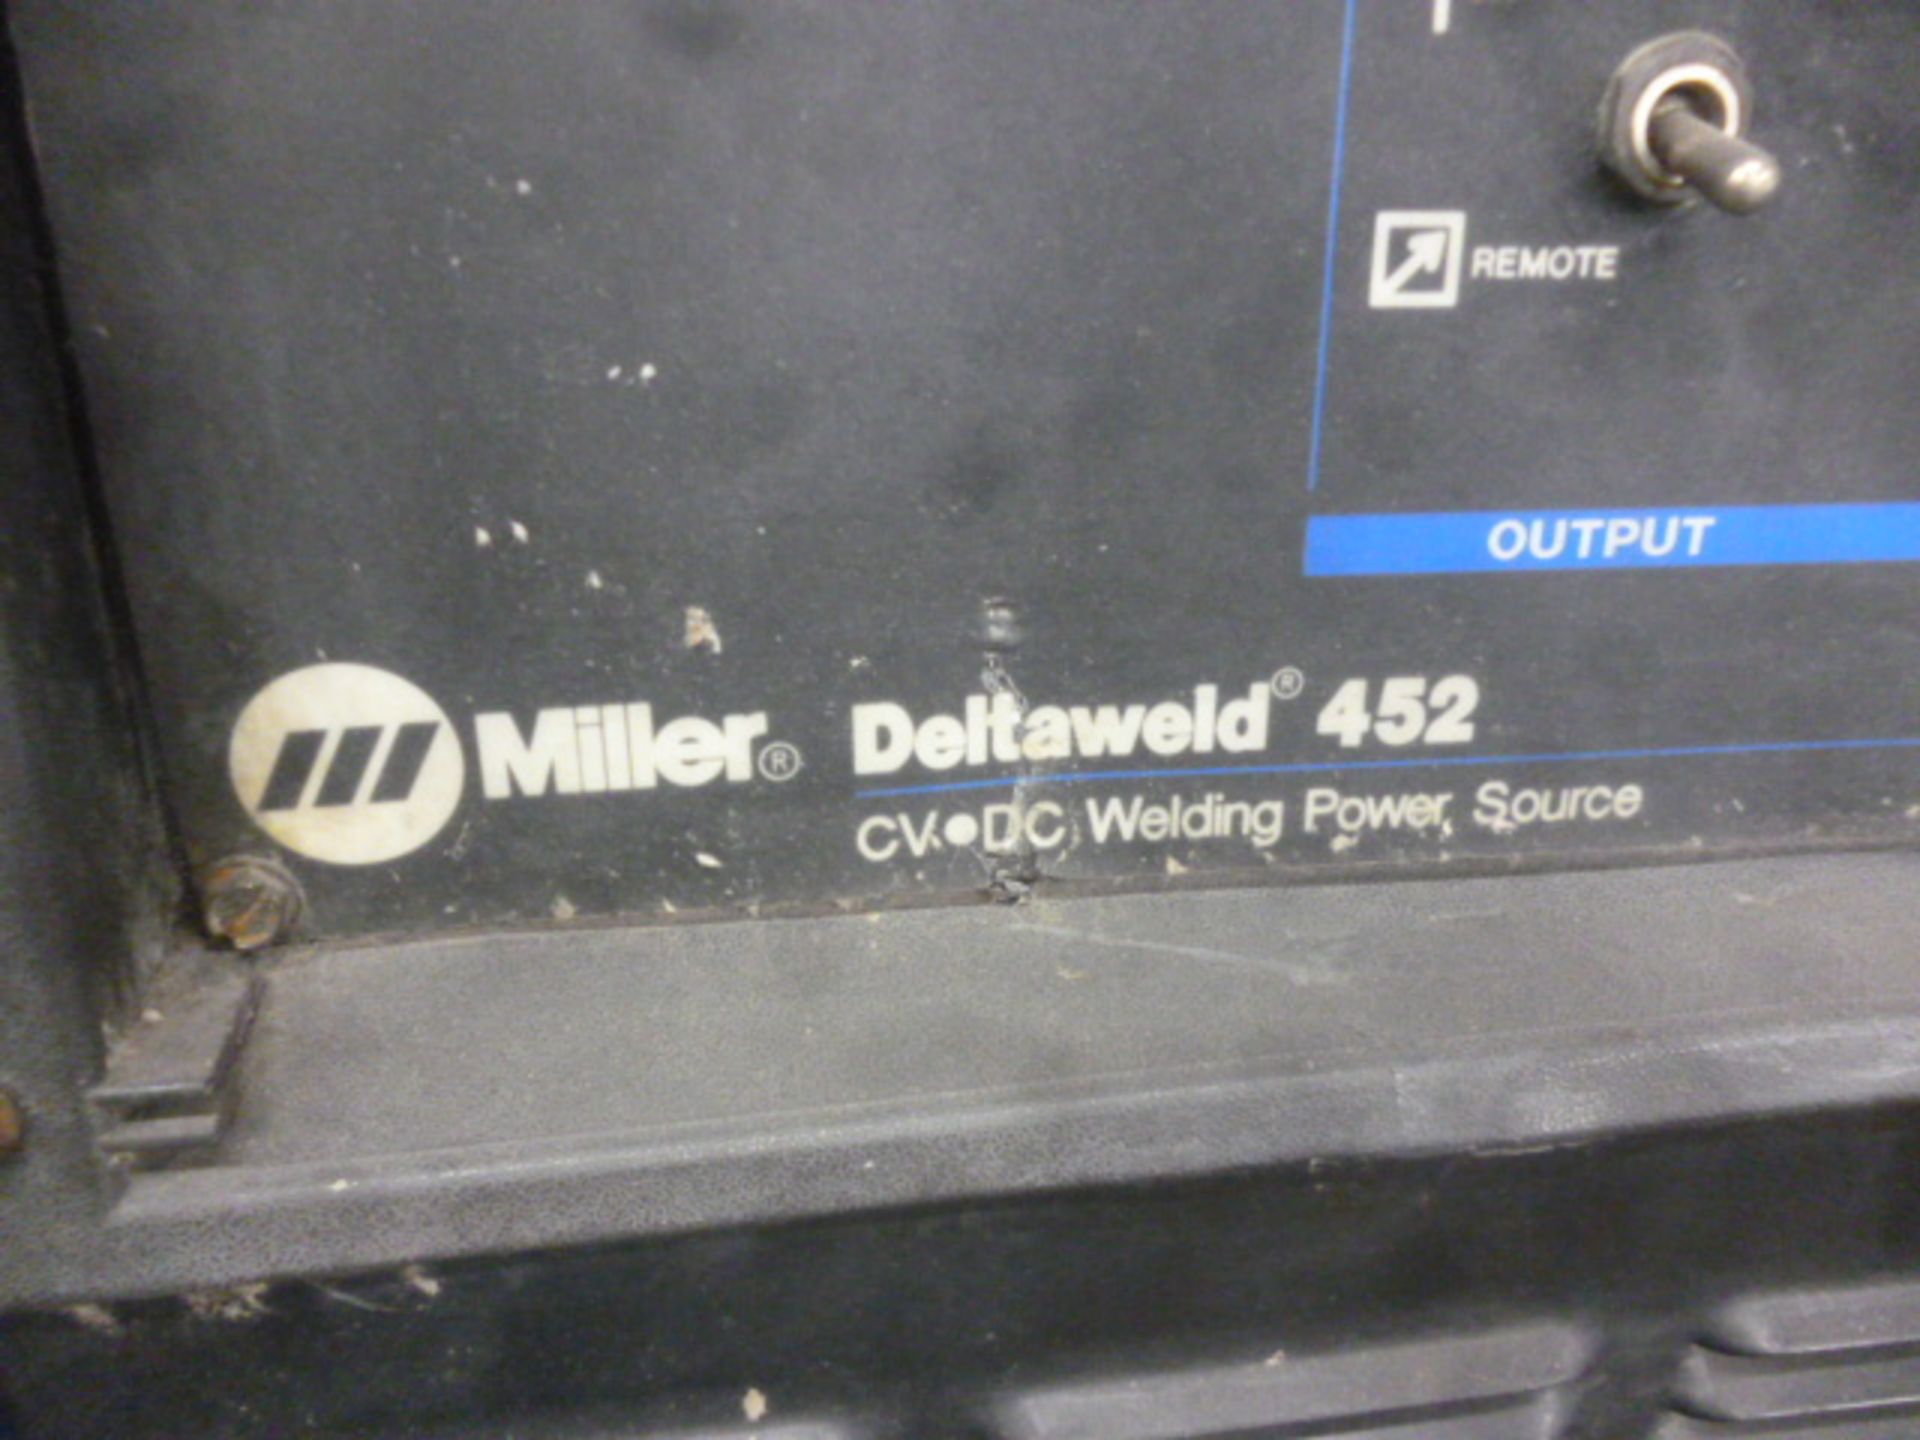 Miller 6-axis robot inoculating a Delta weld CV.DC power welding source. - Image 4 of 7